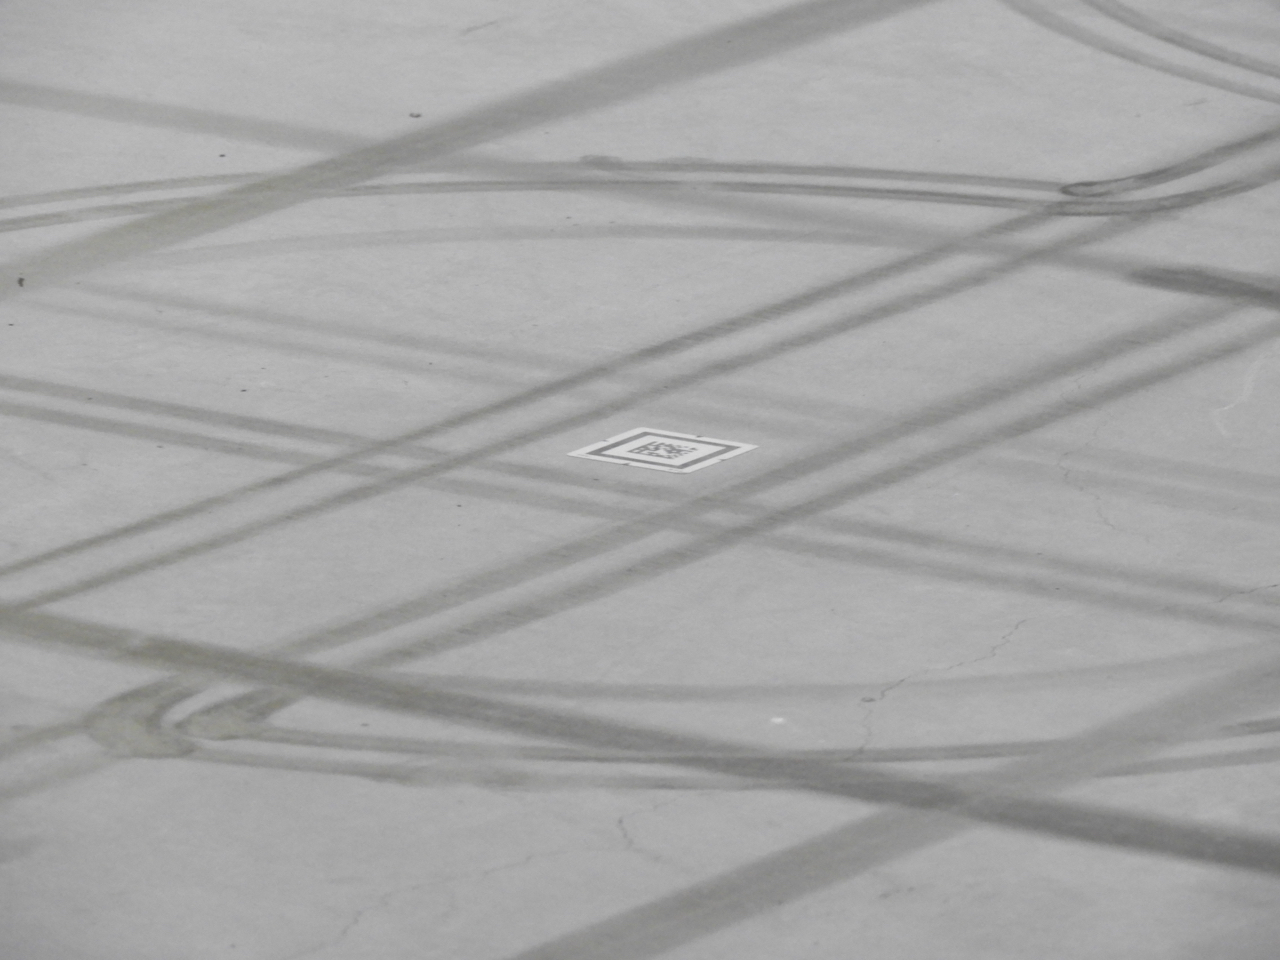 ドライブは自律式で床のQRコードを読み込んで移動する。タイヤで黒い線ができるほど正確に動いているのがわかる。